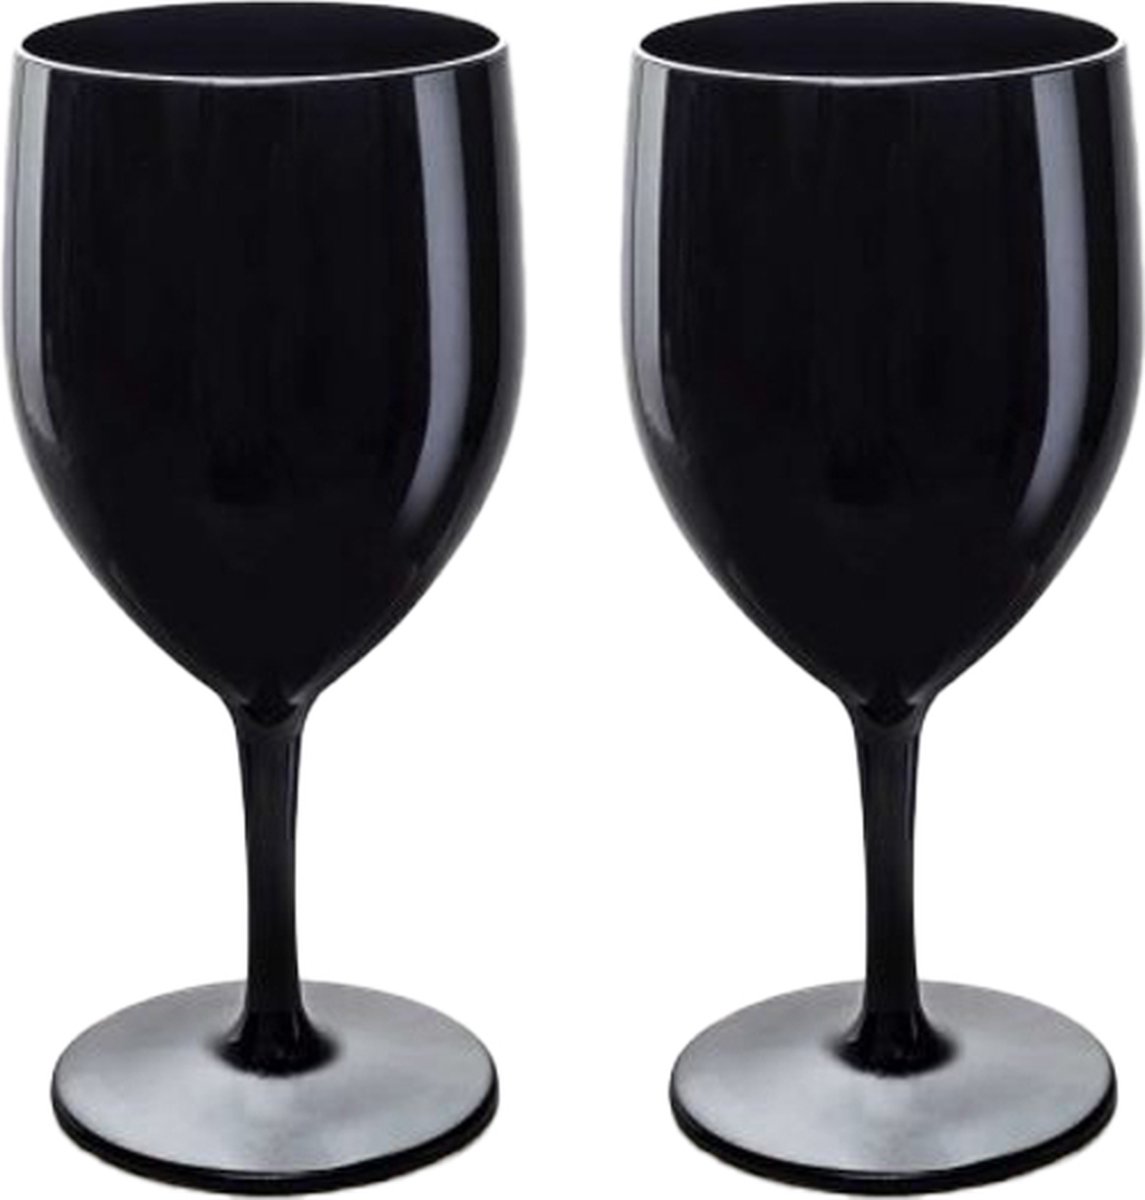 RBDRINKS Wijnglazen - Kunststof Wijnglazen - Wijnglazen Set - Witte Wijnglazen - Camping Glazen - Kunststof Glazen - Plastic Glazen - 27cl - Zwart - 2 Stuks